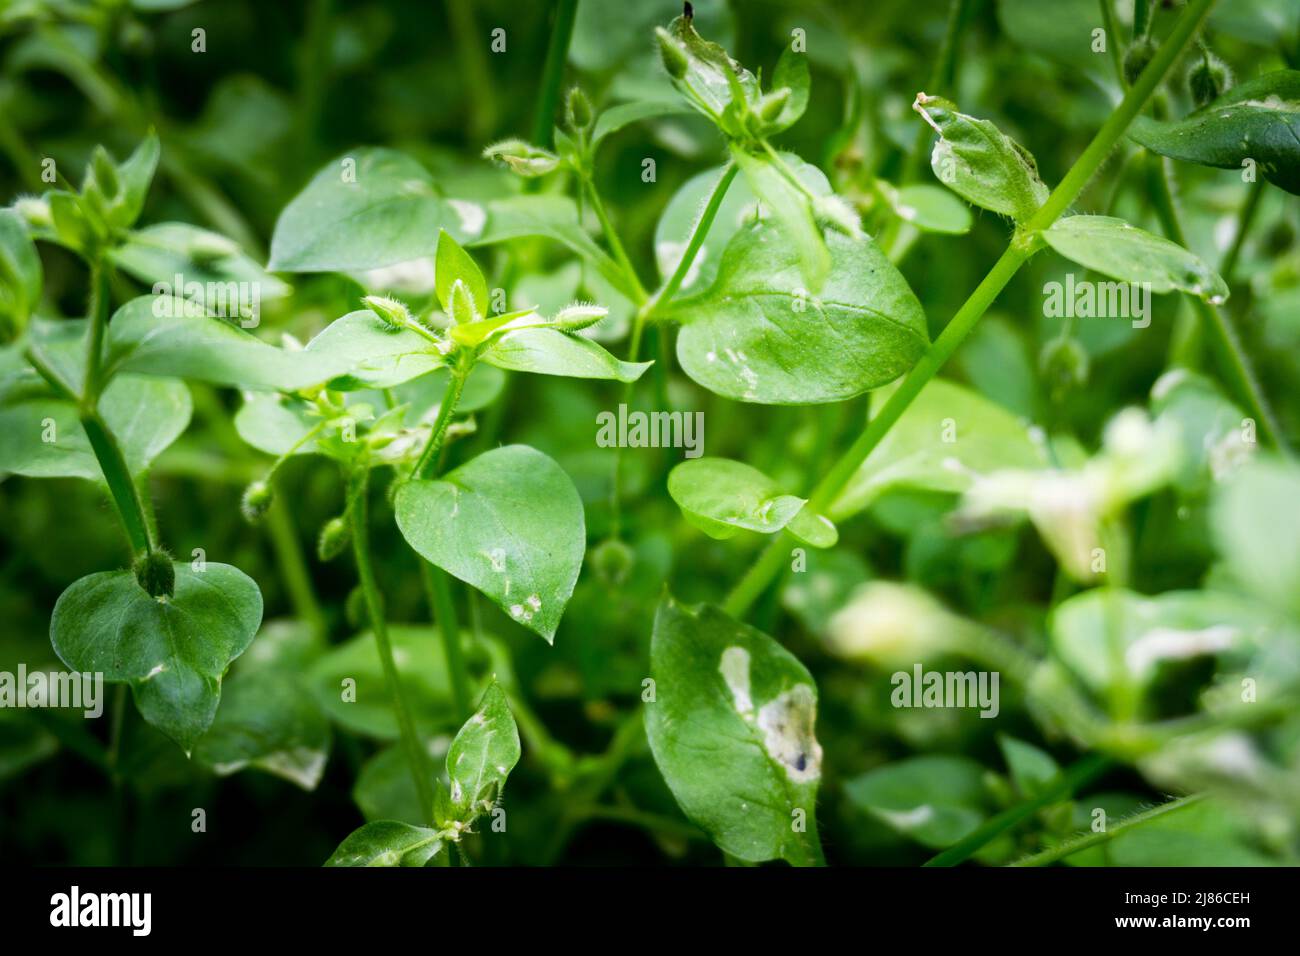 Eine Nahaufnahme von Stellaria media, Kicherkraut, ist eine einjährige und mehrjährige blühende Pflanze in der Familie der Caryophyllaceae. Uttarakhand Indien Stockfoto